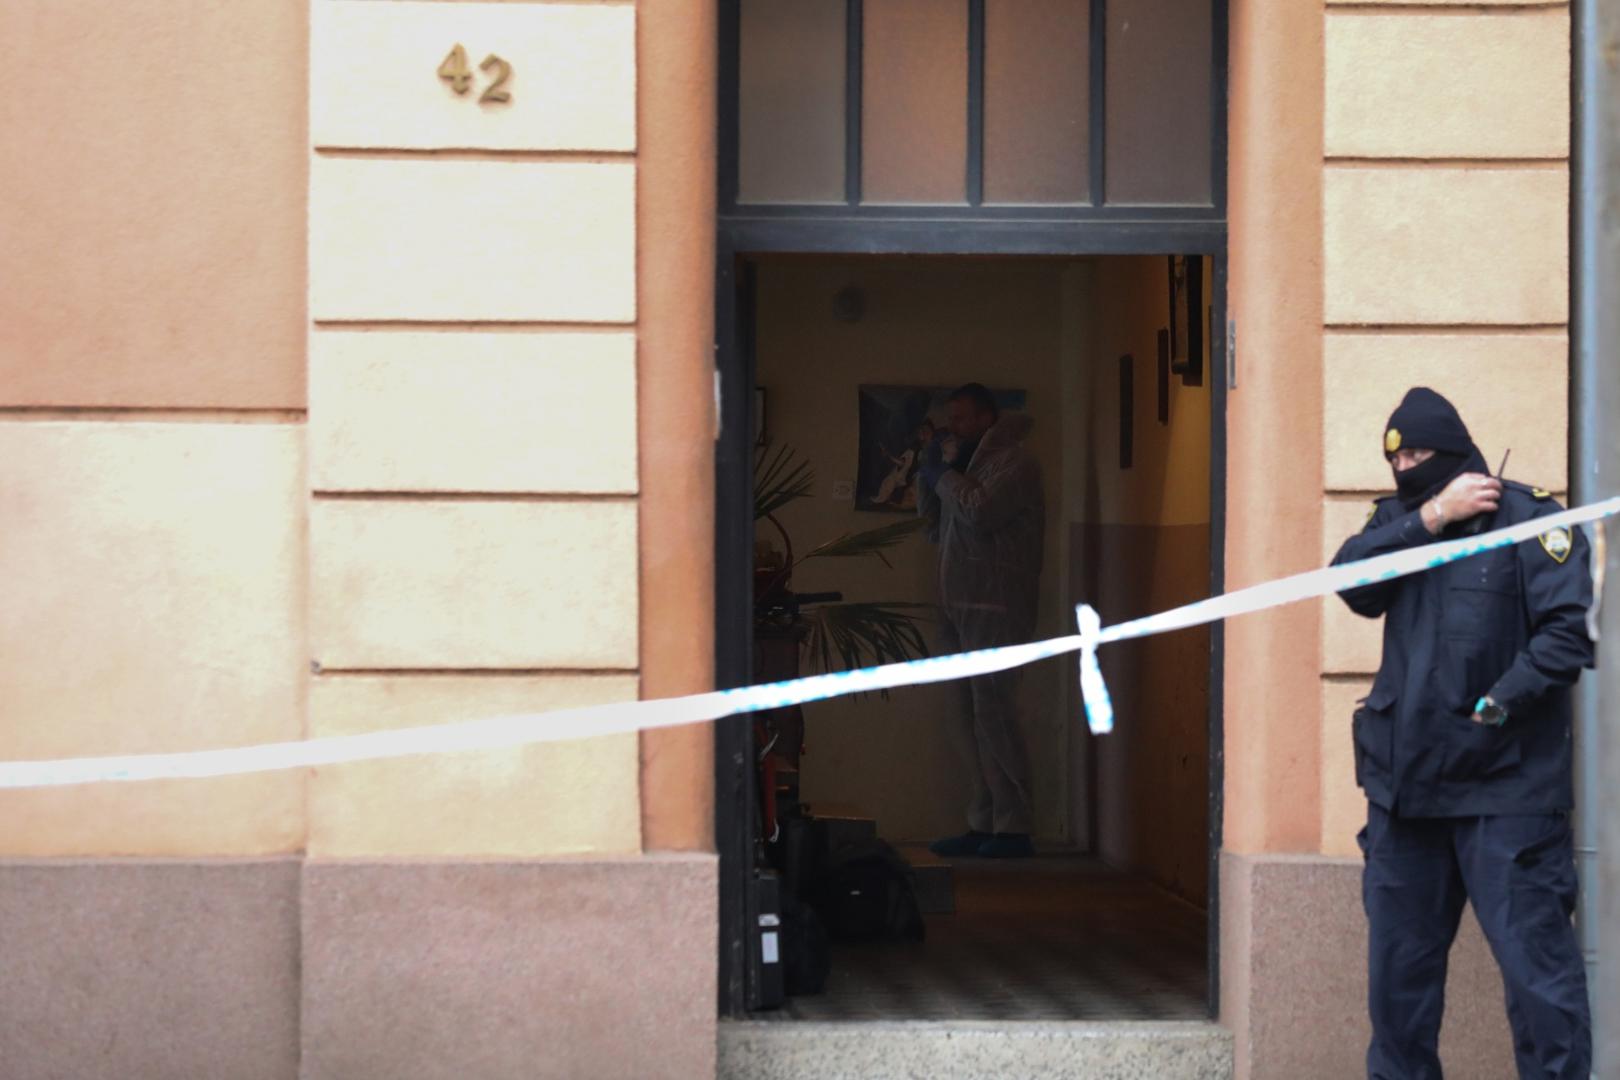 19.04.2021., Osijek - U 16.50 sati u Reisnerovoj ulici na broju 42, u Osijeku, pronadjeno je mrtvo tijelo muskarca starosti 74 godine i tesko ozlijedjenog muskarca u dobi od 39 godina. Ocevid je u tijeku. Photo: Dubravka Petric/PIXSELL